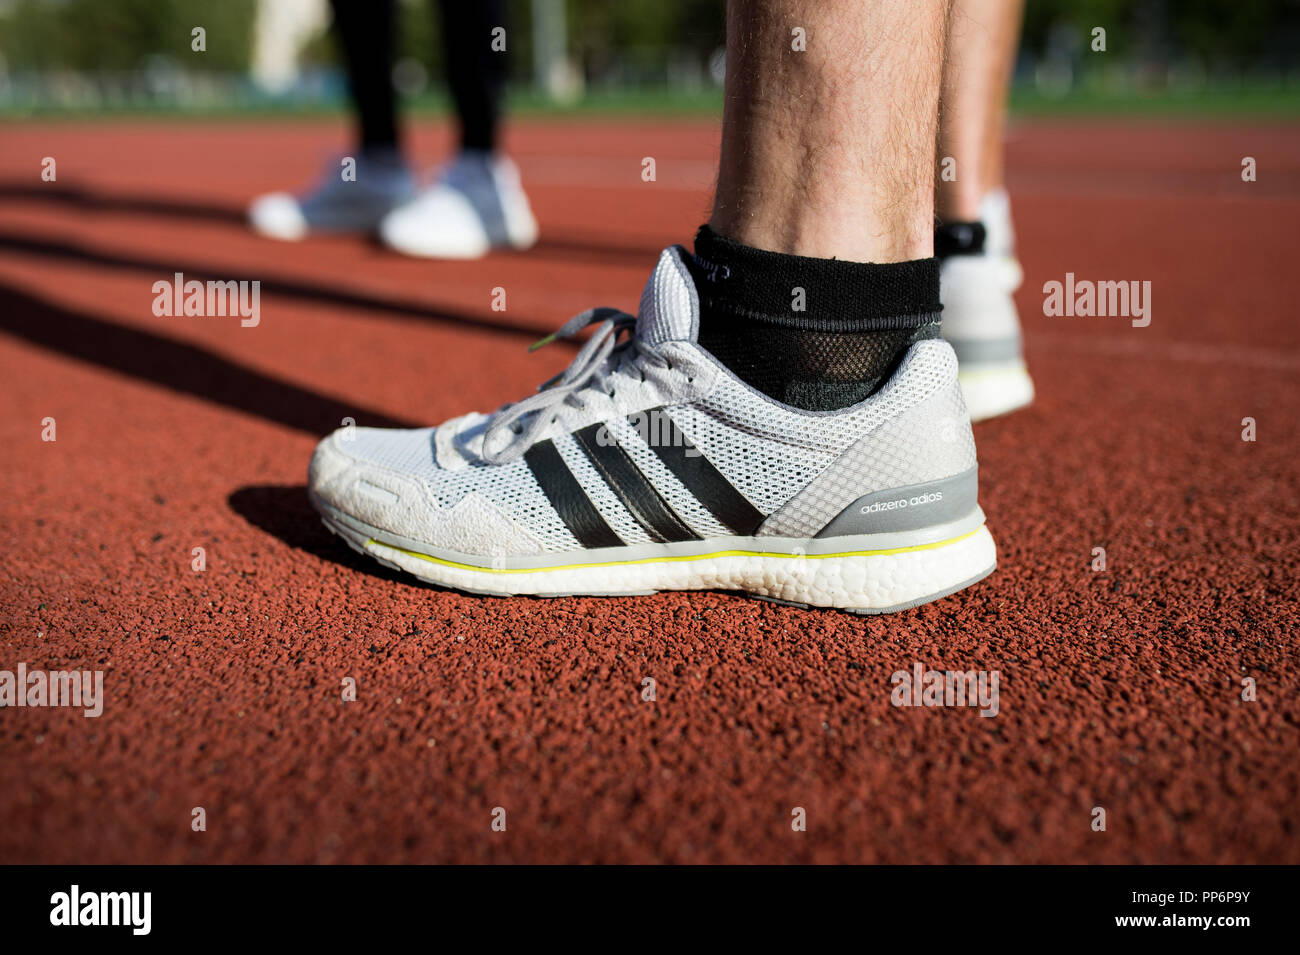 Ejecutar: Adidas zapatos para en una pista de atletismo durante un entrenamiento de stock